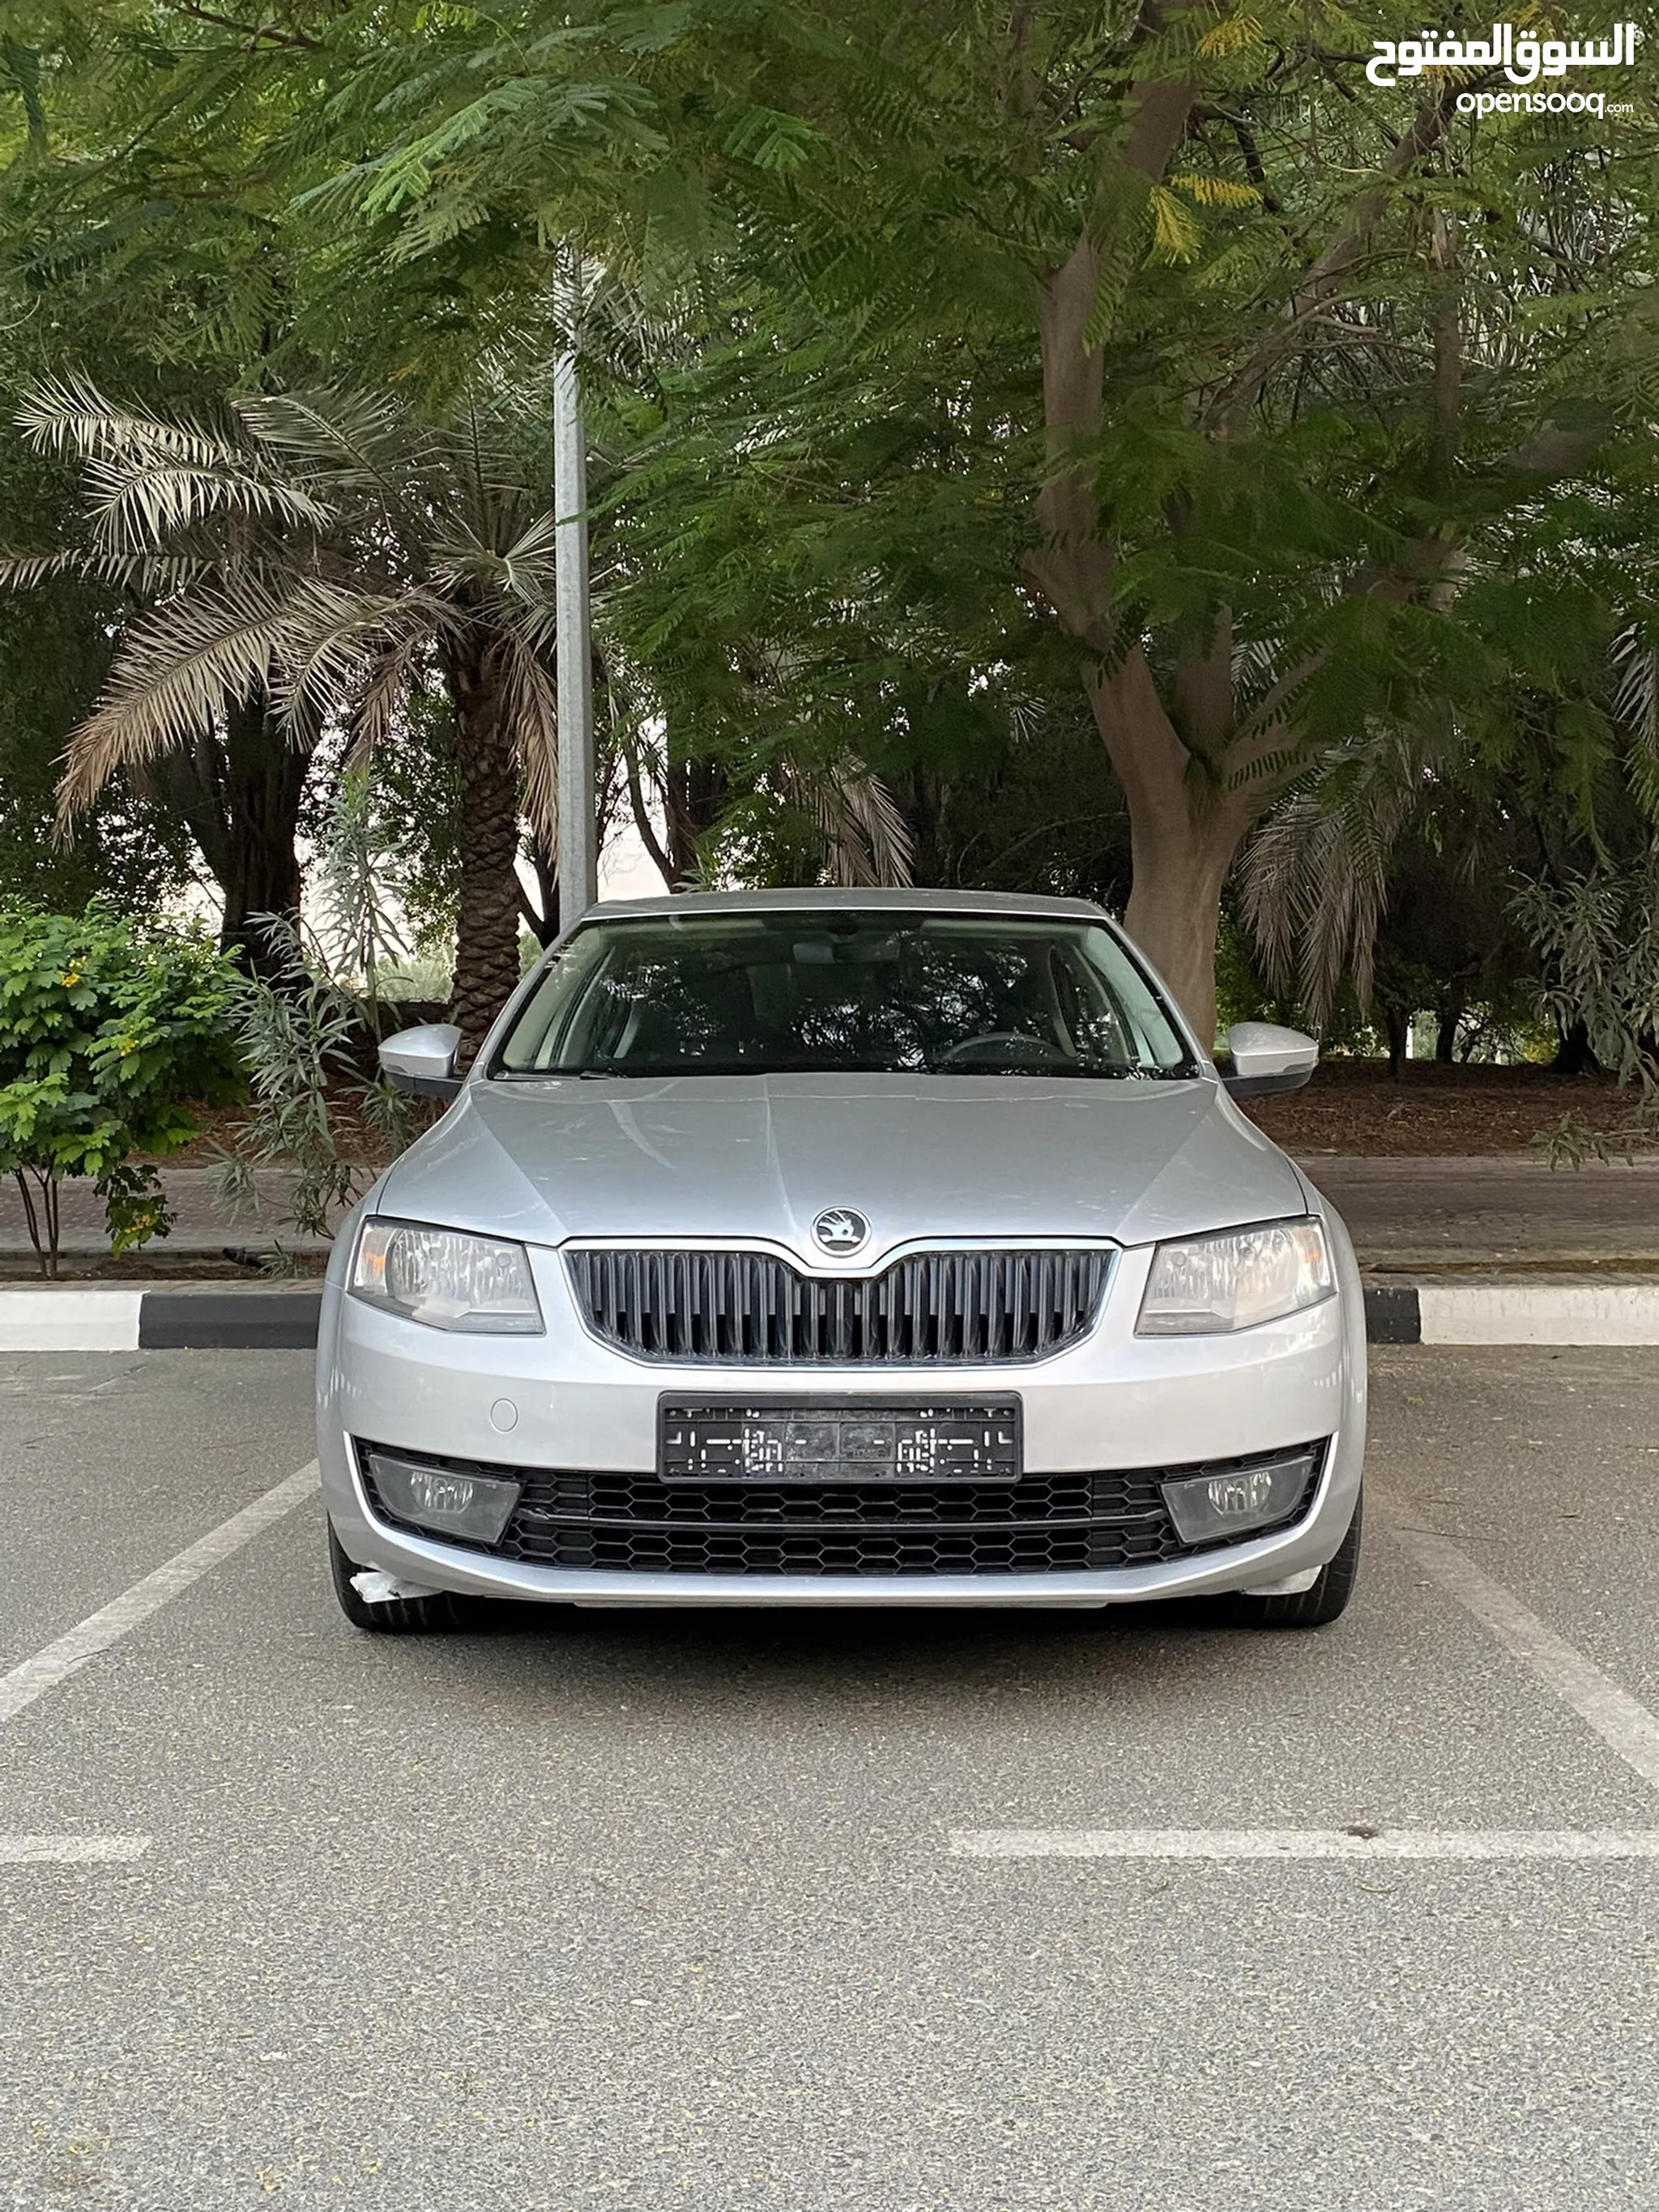 سيارات سكودا للبيع : ارخص الاسعار في الإمارات : جميع موديلات سيارة سكودا :  مستعملة وجديدة | السوق المفتوح